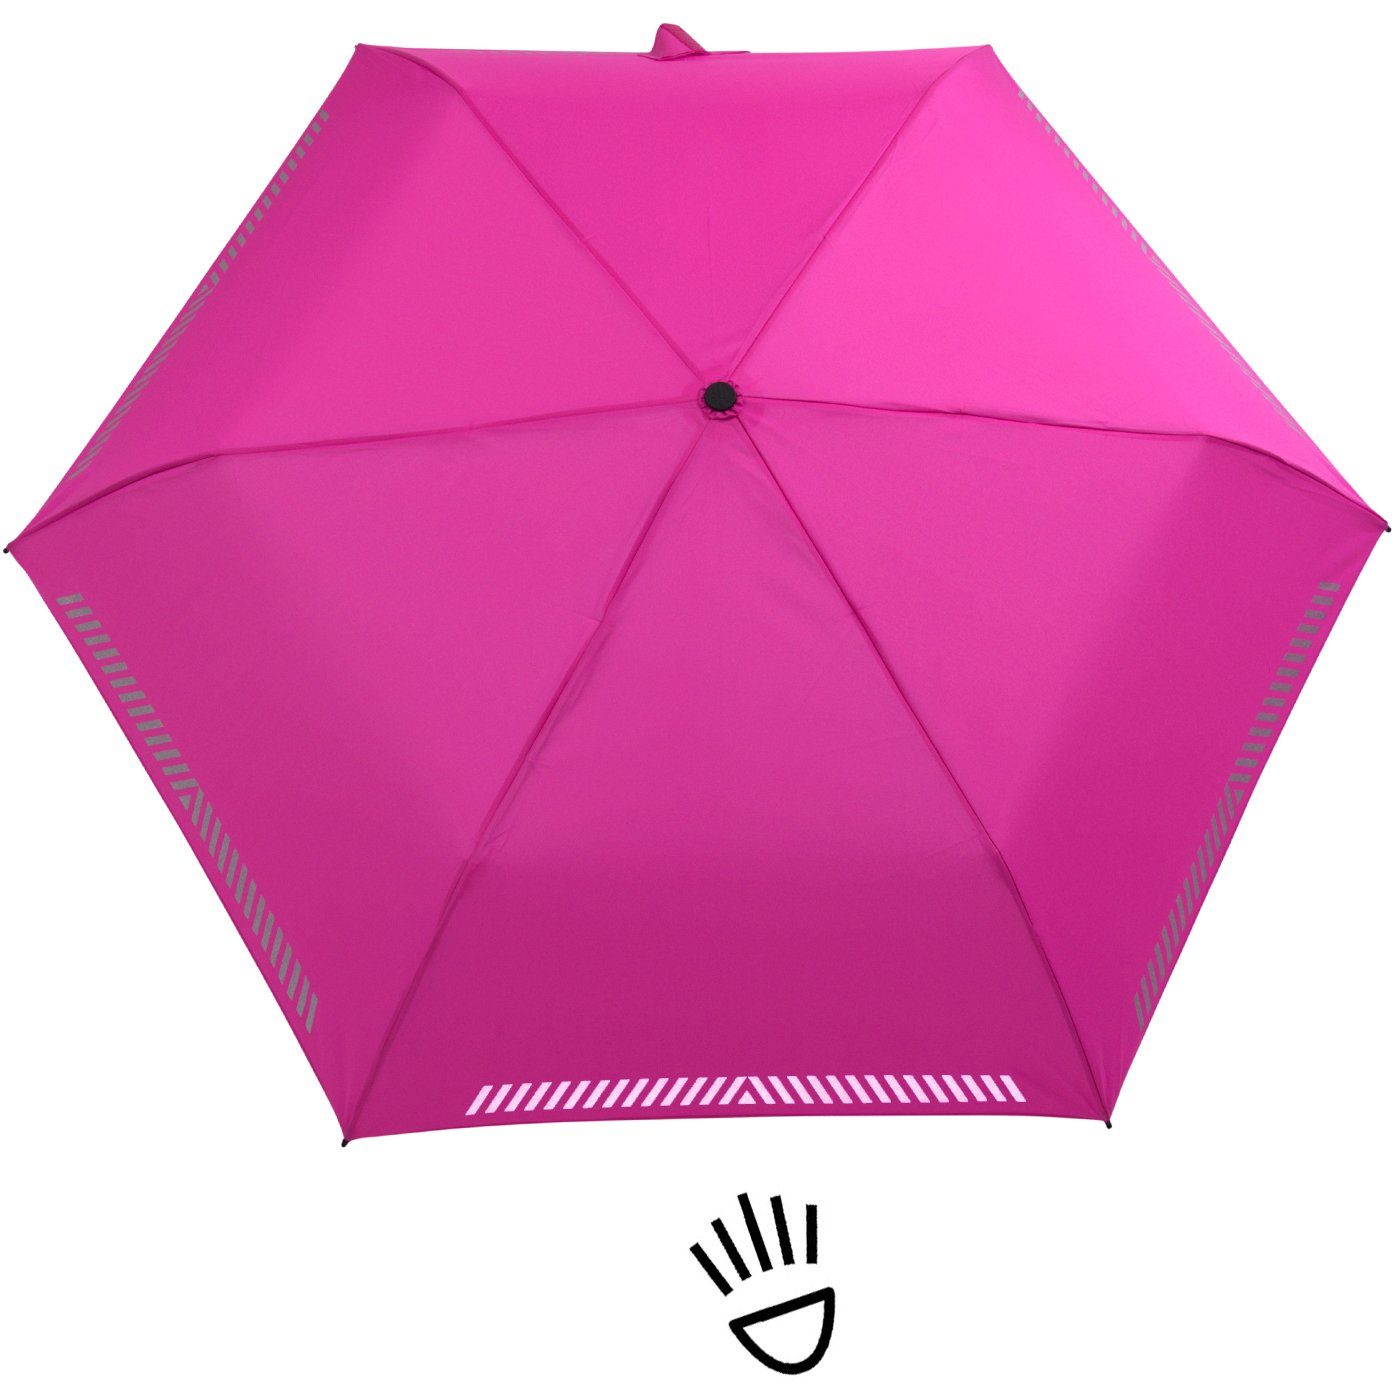 iX-brella Taschenregenschirm Kinderschirm neon durch mit pink - Reflex-Streifen Auf-Zu-Automatik, Sicherheit reflektierend